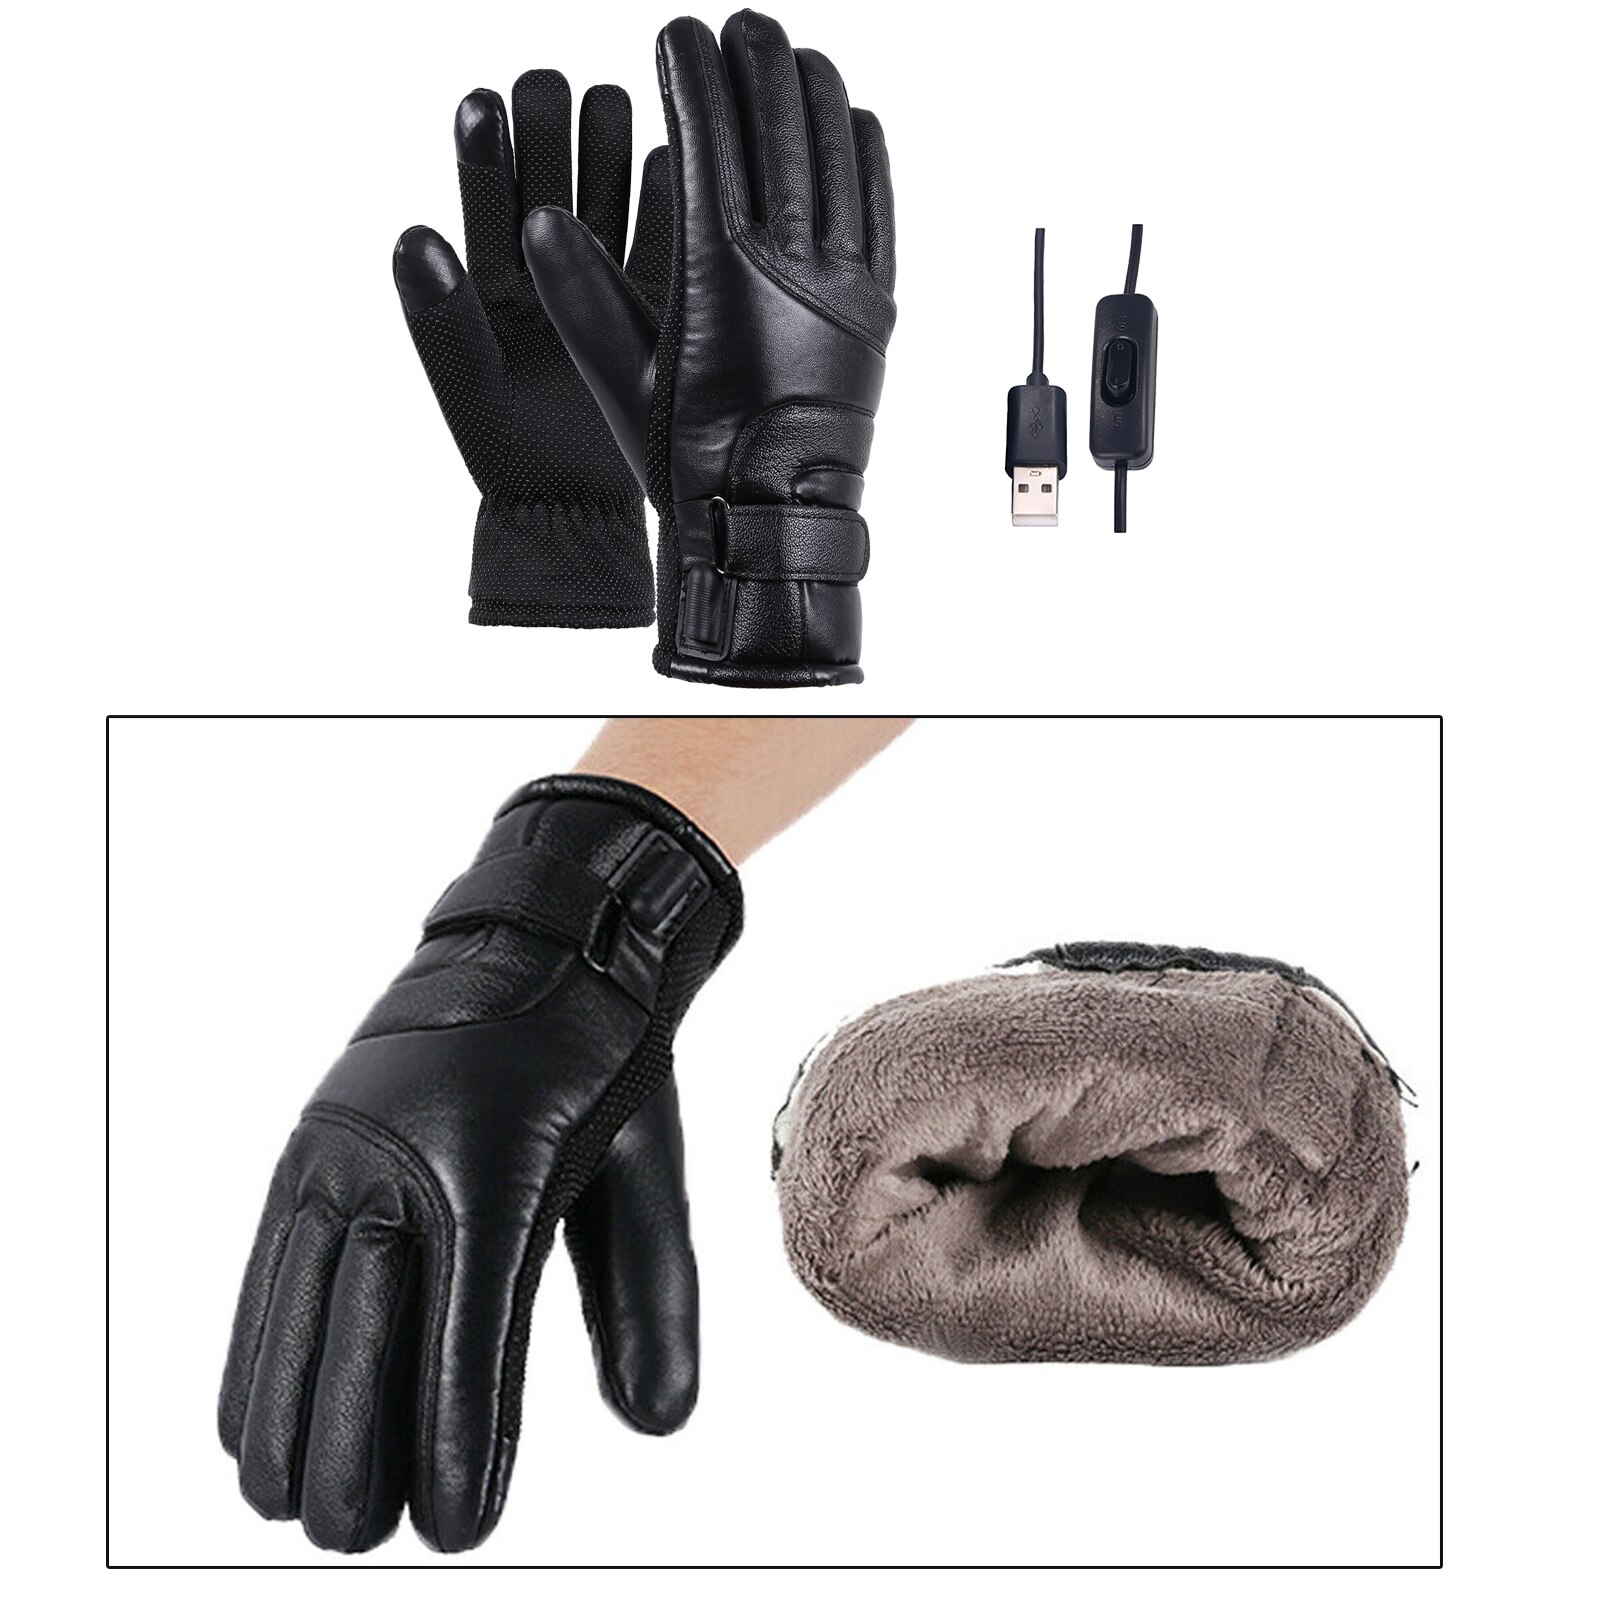 Vinter elektriske opvarmede handsker vandtæt vindtæt cykling varm opvarmning berøringsskærm usb-drevne opvarmede handsker